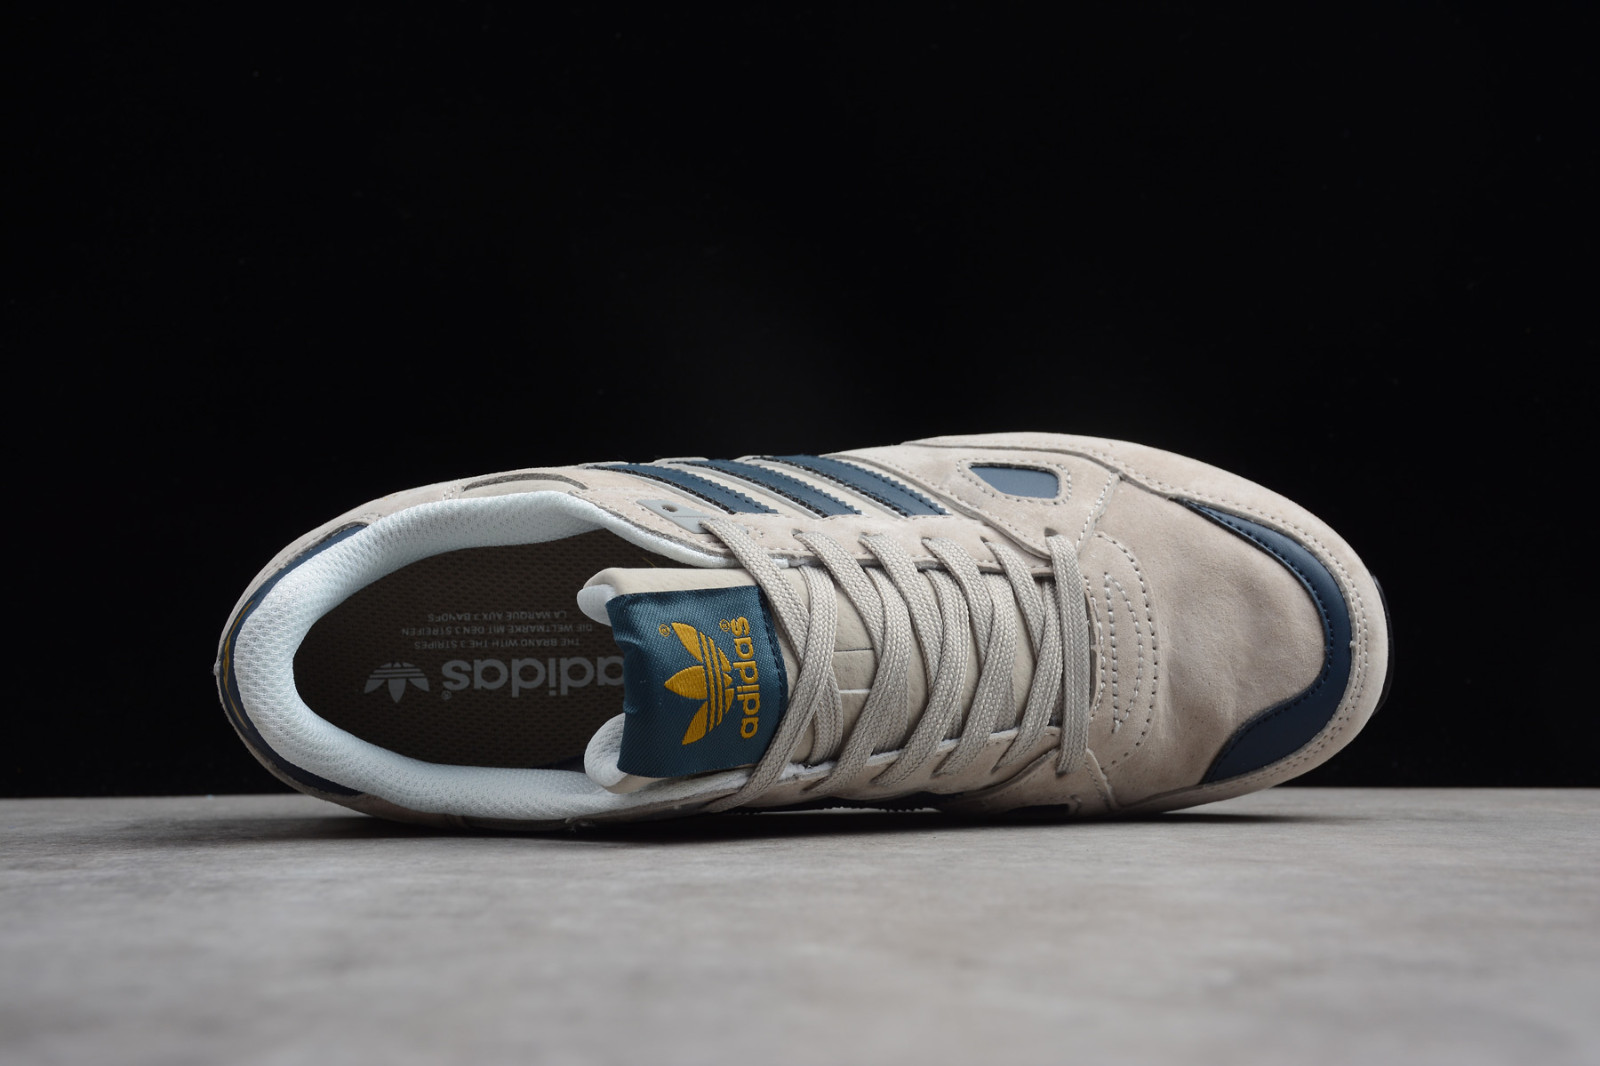 Controversia Menos Loco SasodShops - zapatillas de running competición constitución fuerte ritmo  bajo - Adidas Originals ZX 750 Grey Navy Blue Metallic Gold Shoes Q35066